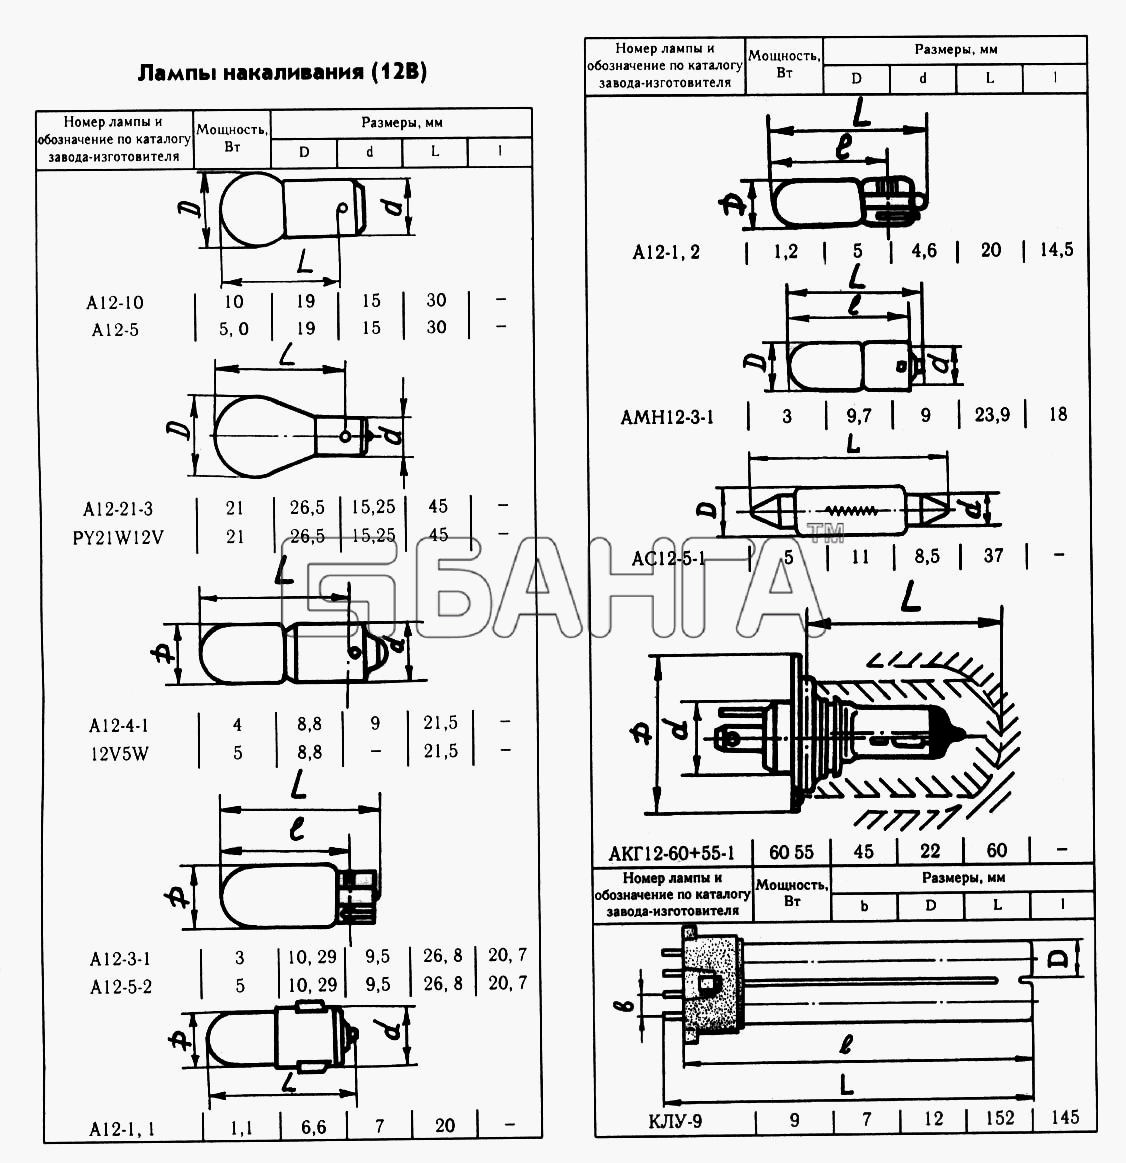 ГАЗ ГАЗ-2217 (Соболь) Схема Лампы накаливания (12В)-175 banga.ua